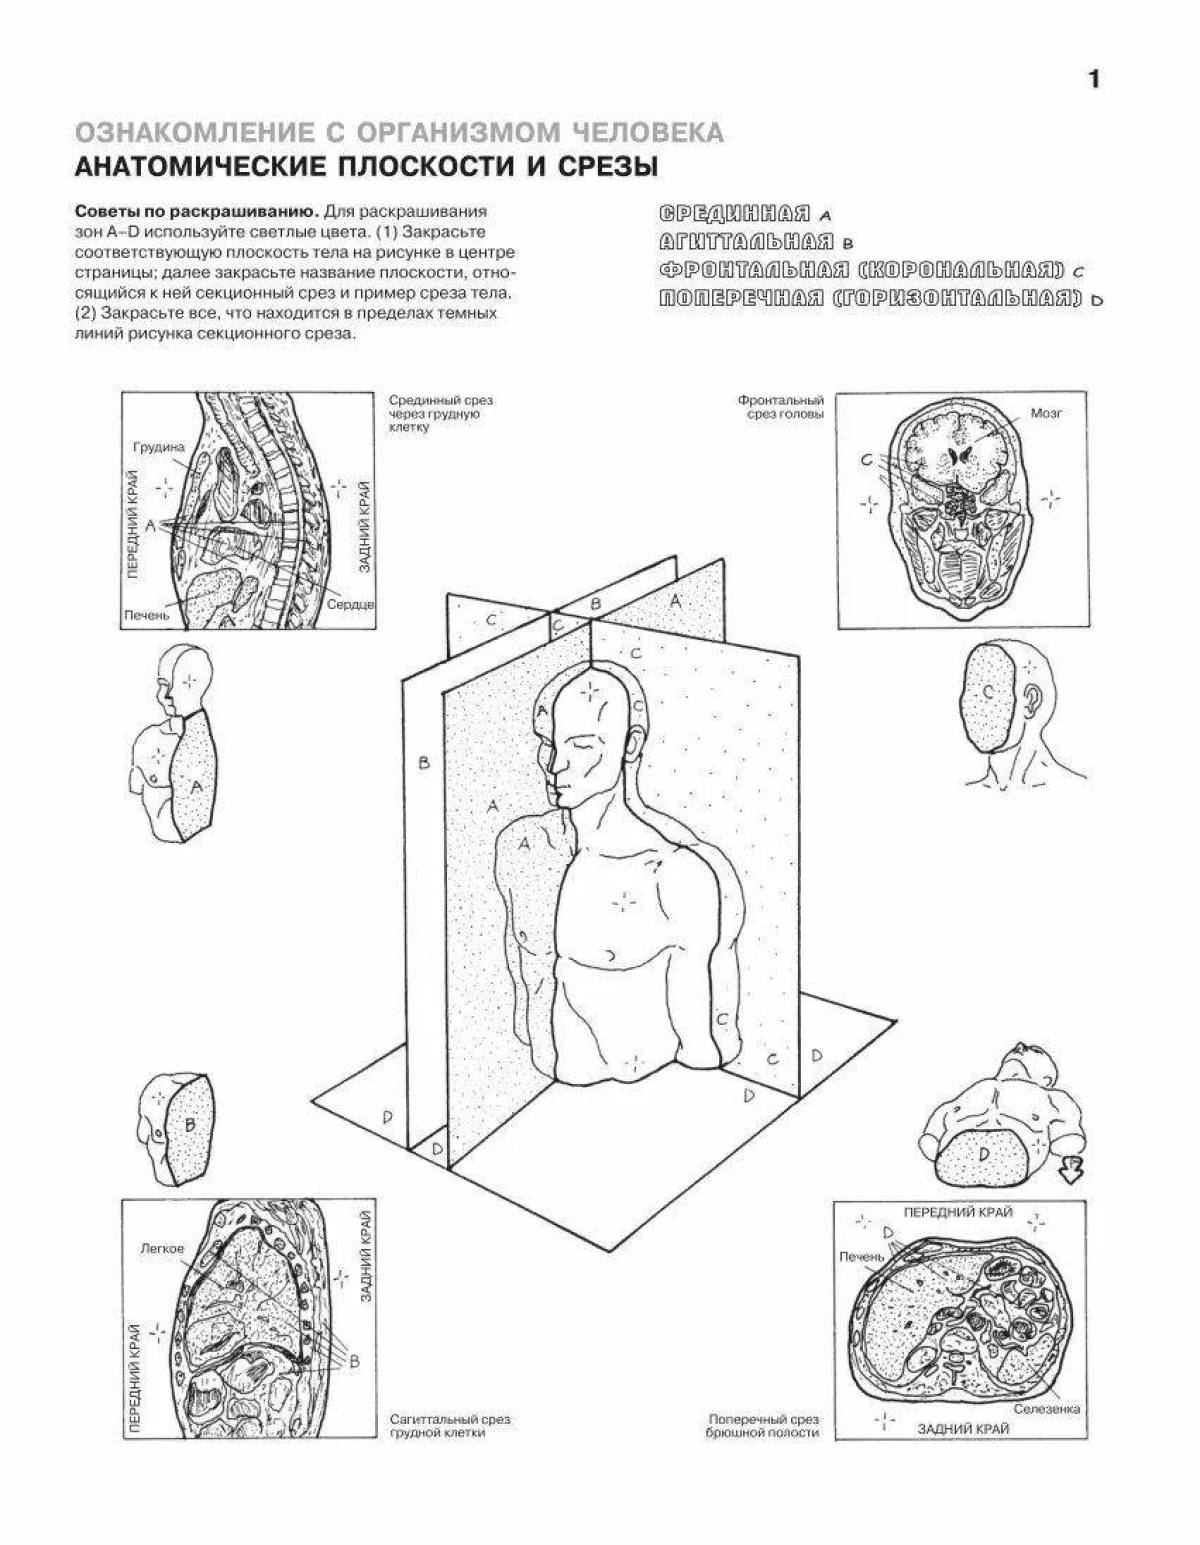 Cute anatomy atlas coloring page